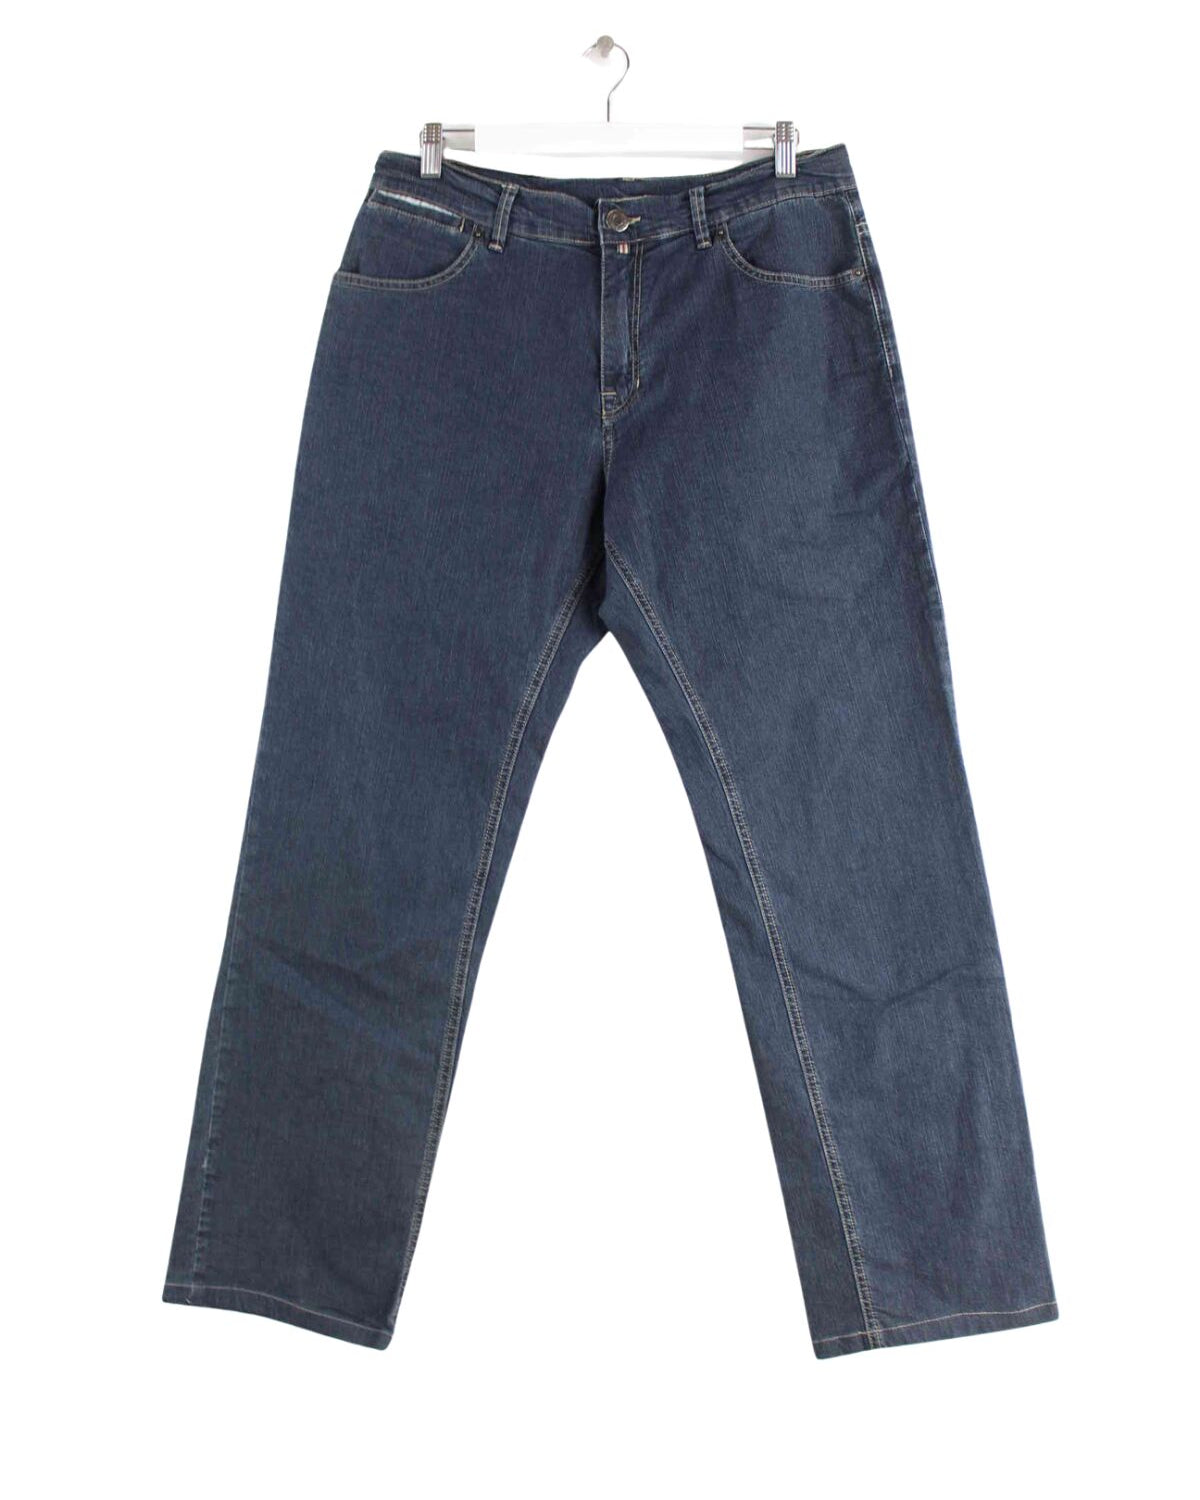 Burberry Jeans Blau W30 L30 (front image)